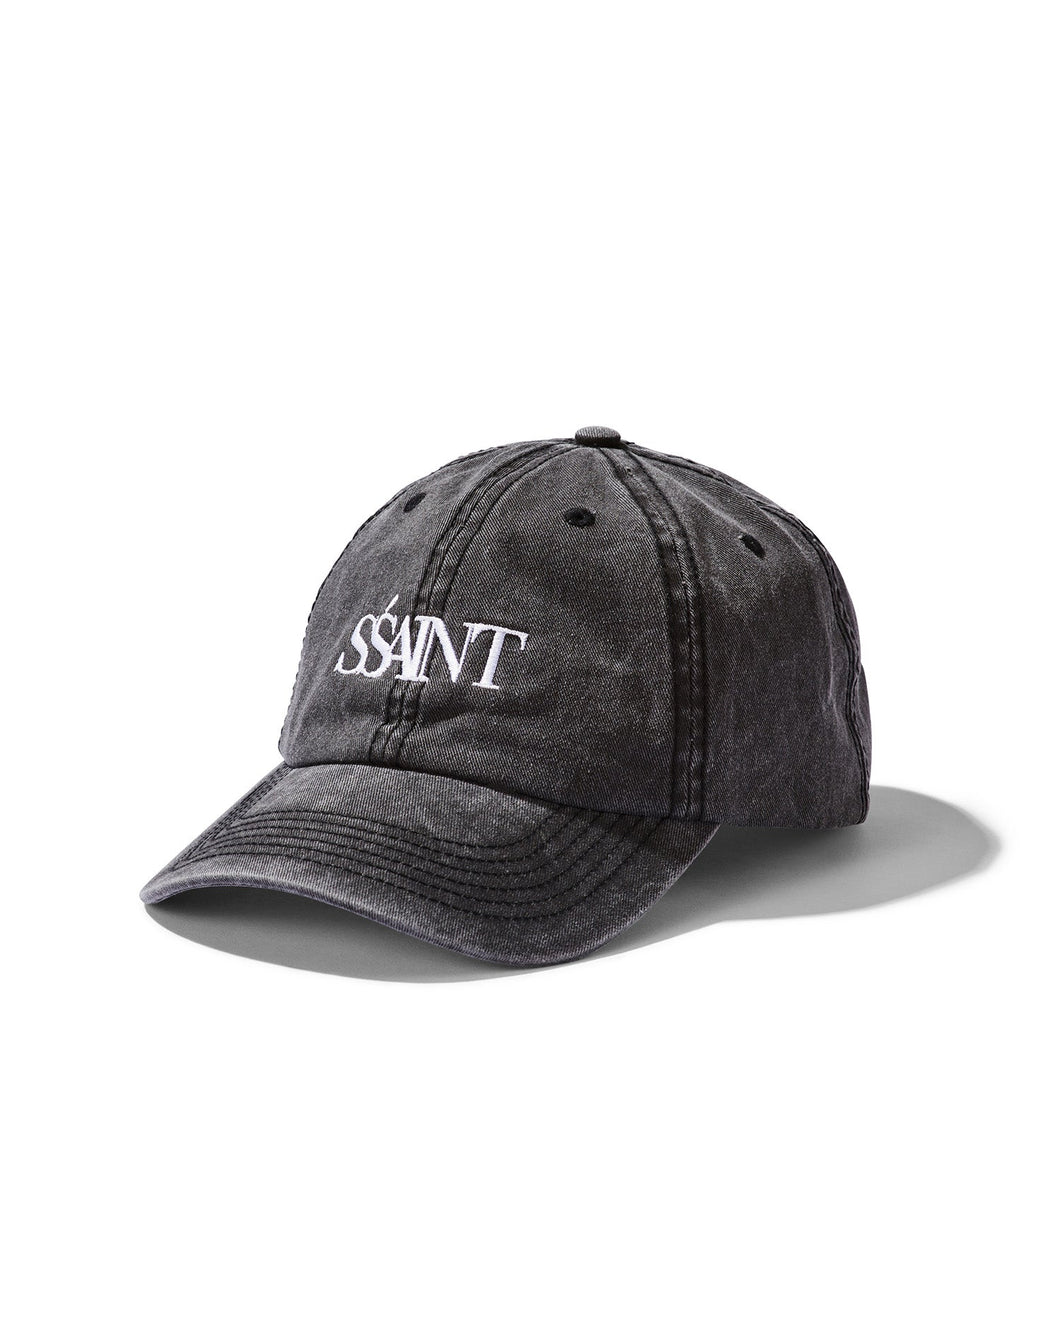 SSAINT Apparel - Limited Edition SSAINT Cap